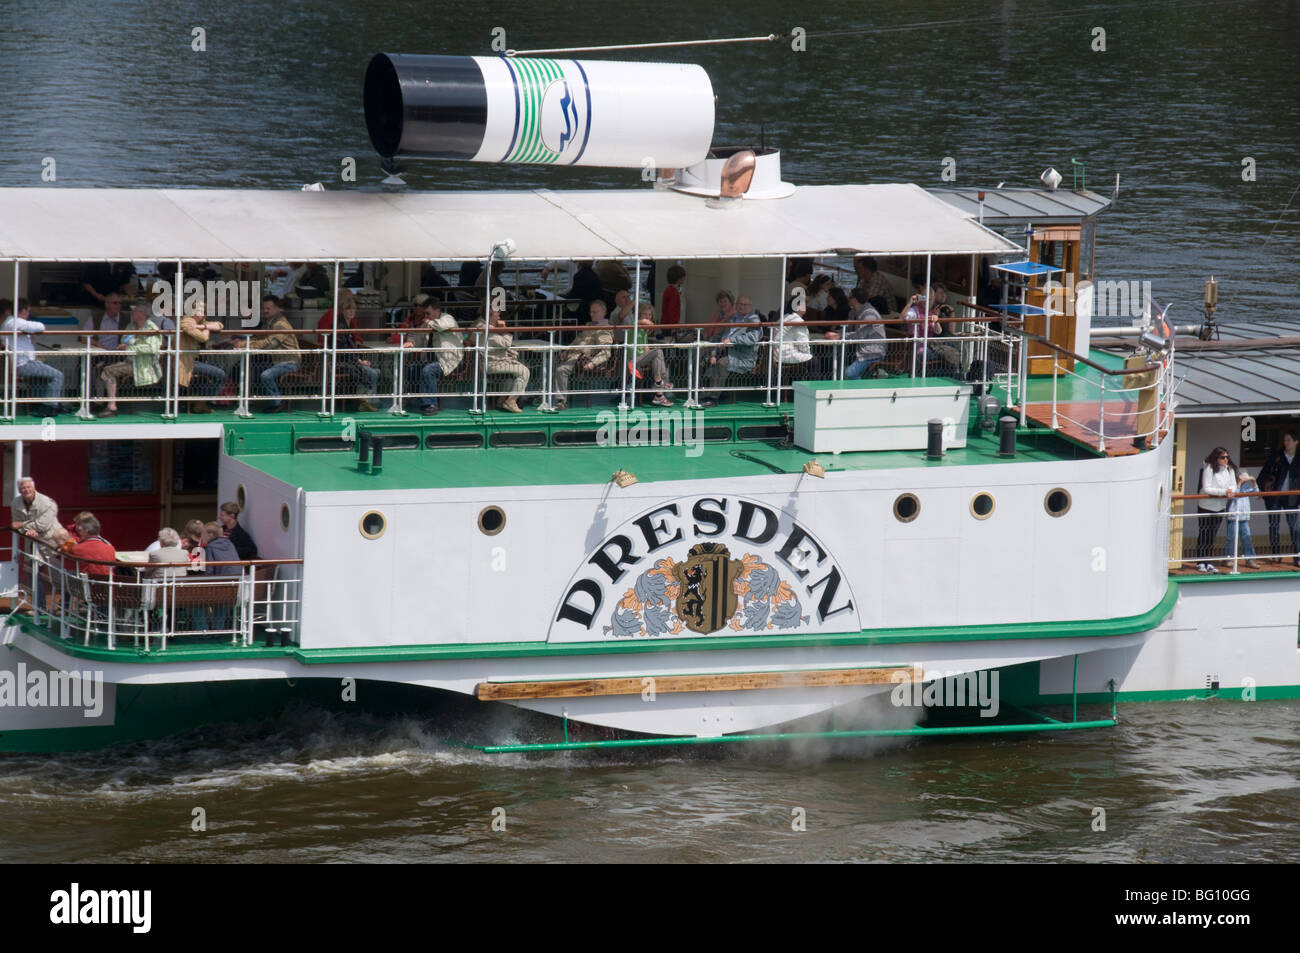 Paddle steamship sobre el río Elba, Dresde, Sajonia, Alemania, Europa Foto de stock